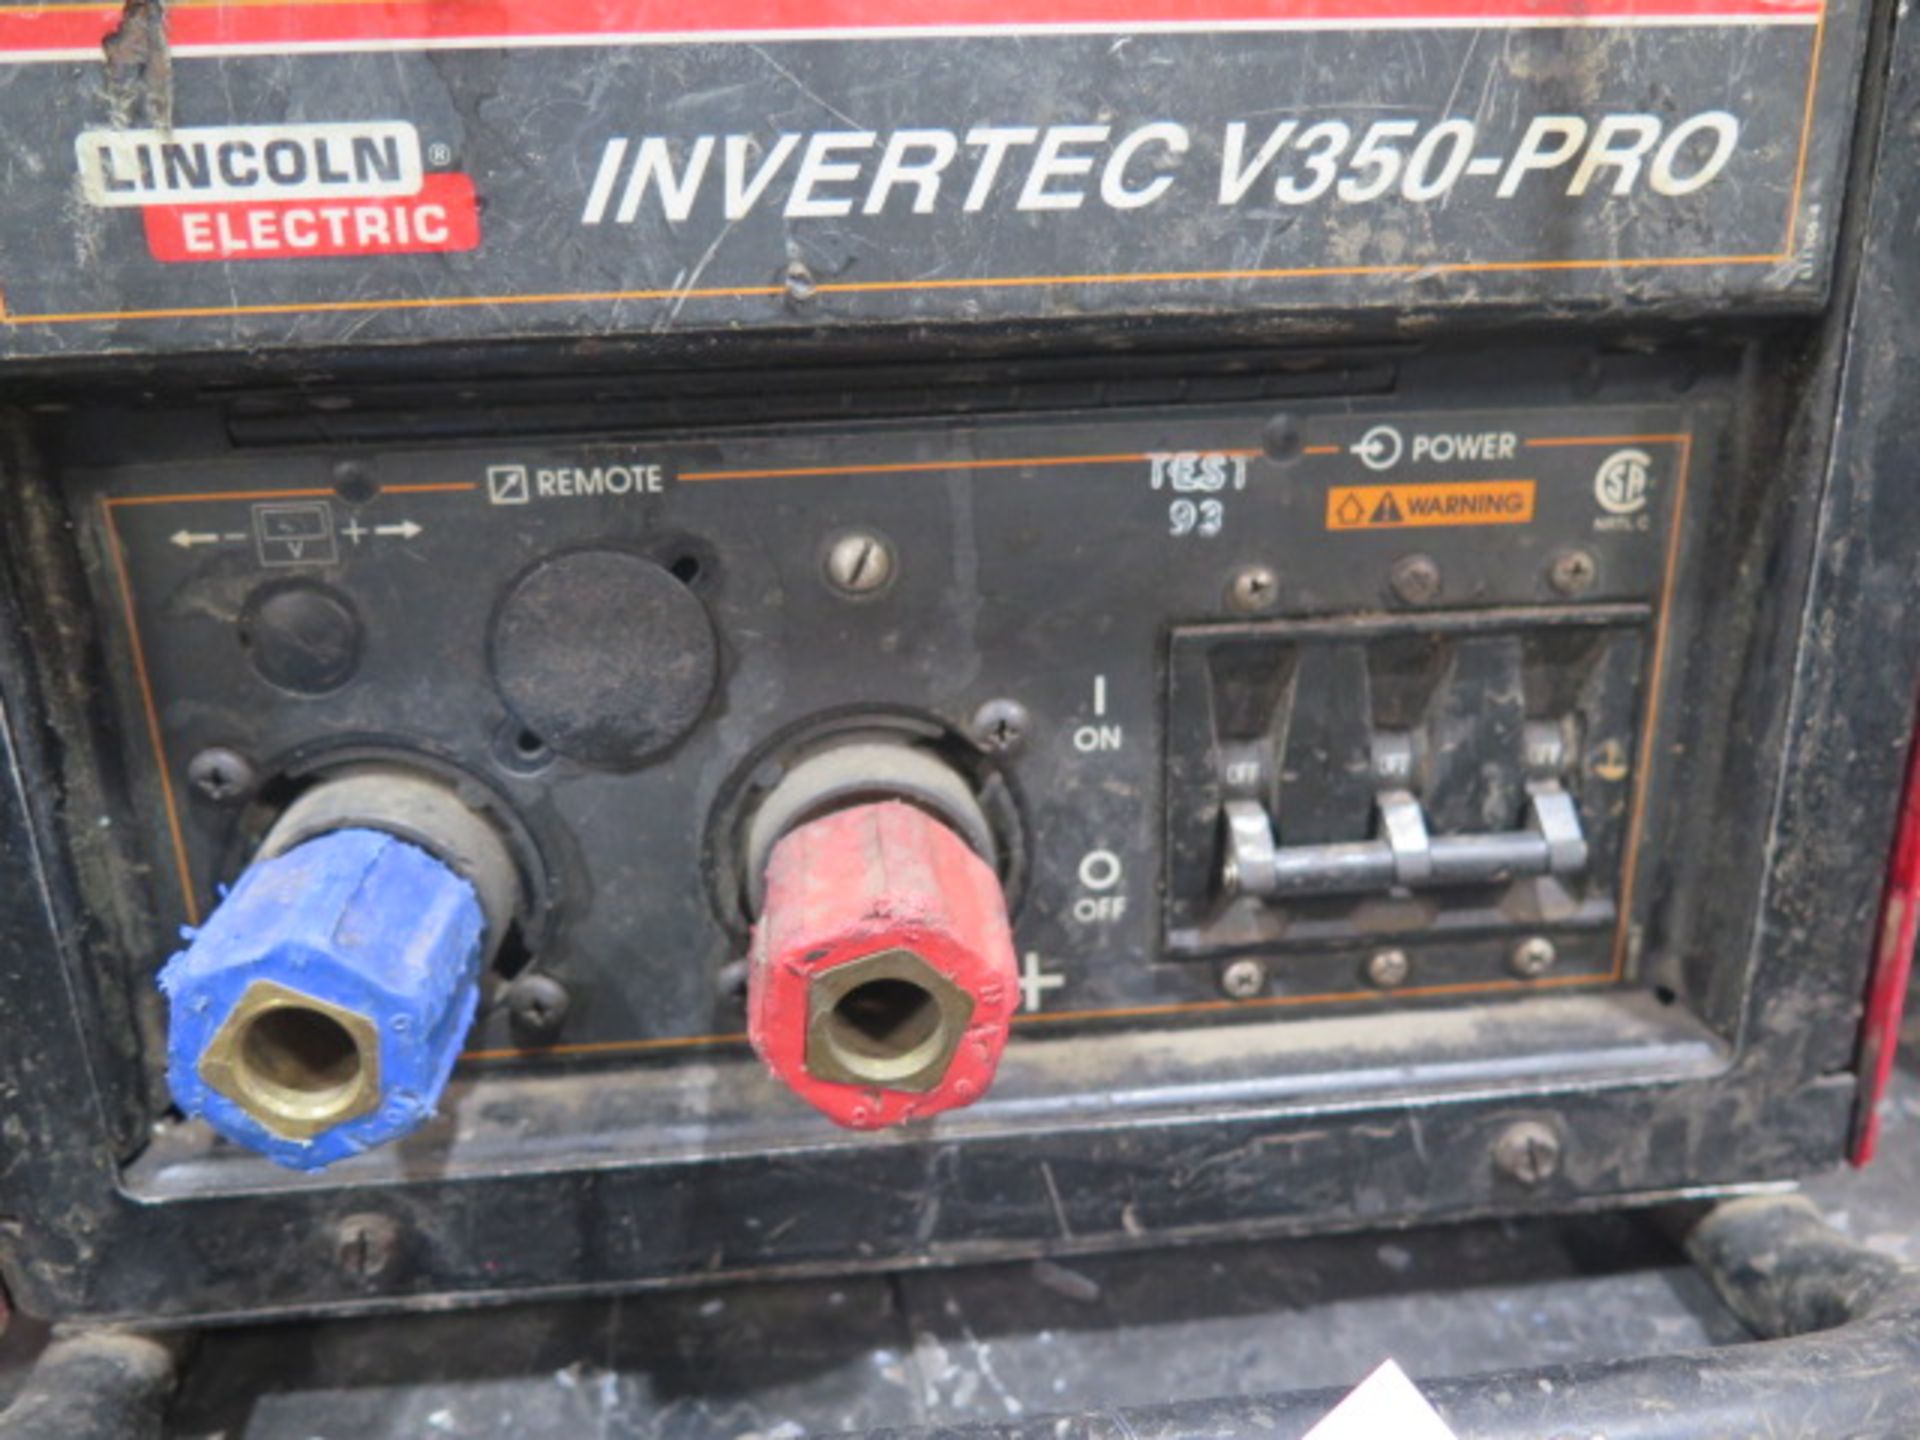 Lincoln Invertec V350-PRO Inverter Welder (SOLD AS-IS - NO WARRANTY) - Image 4 of 5